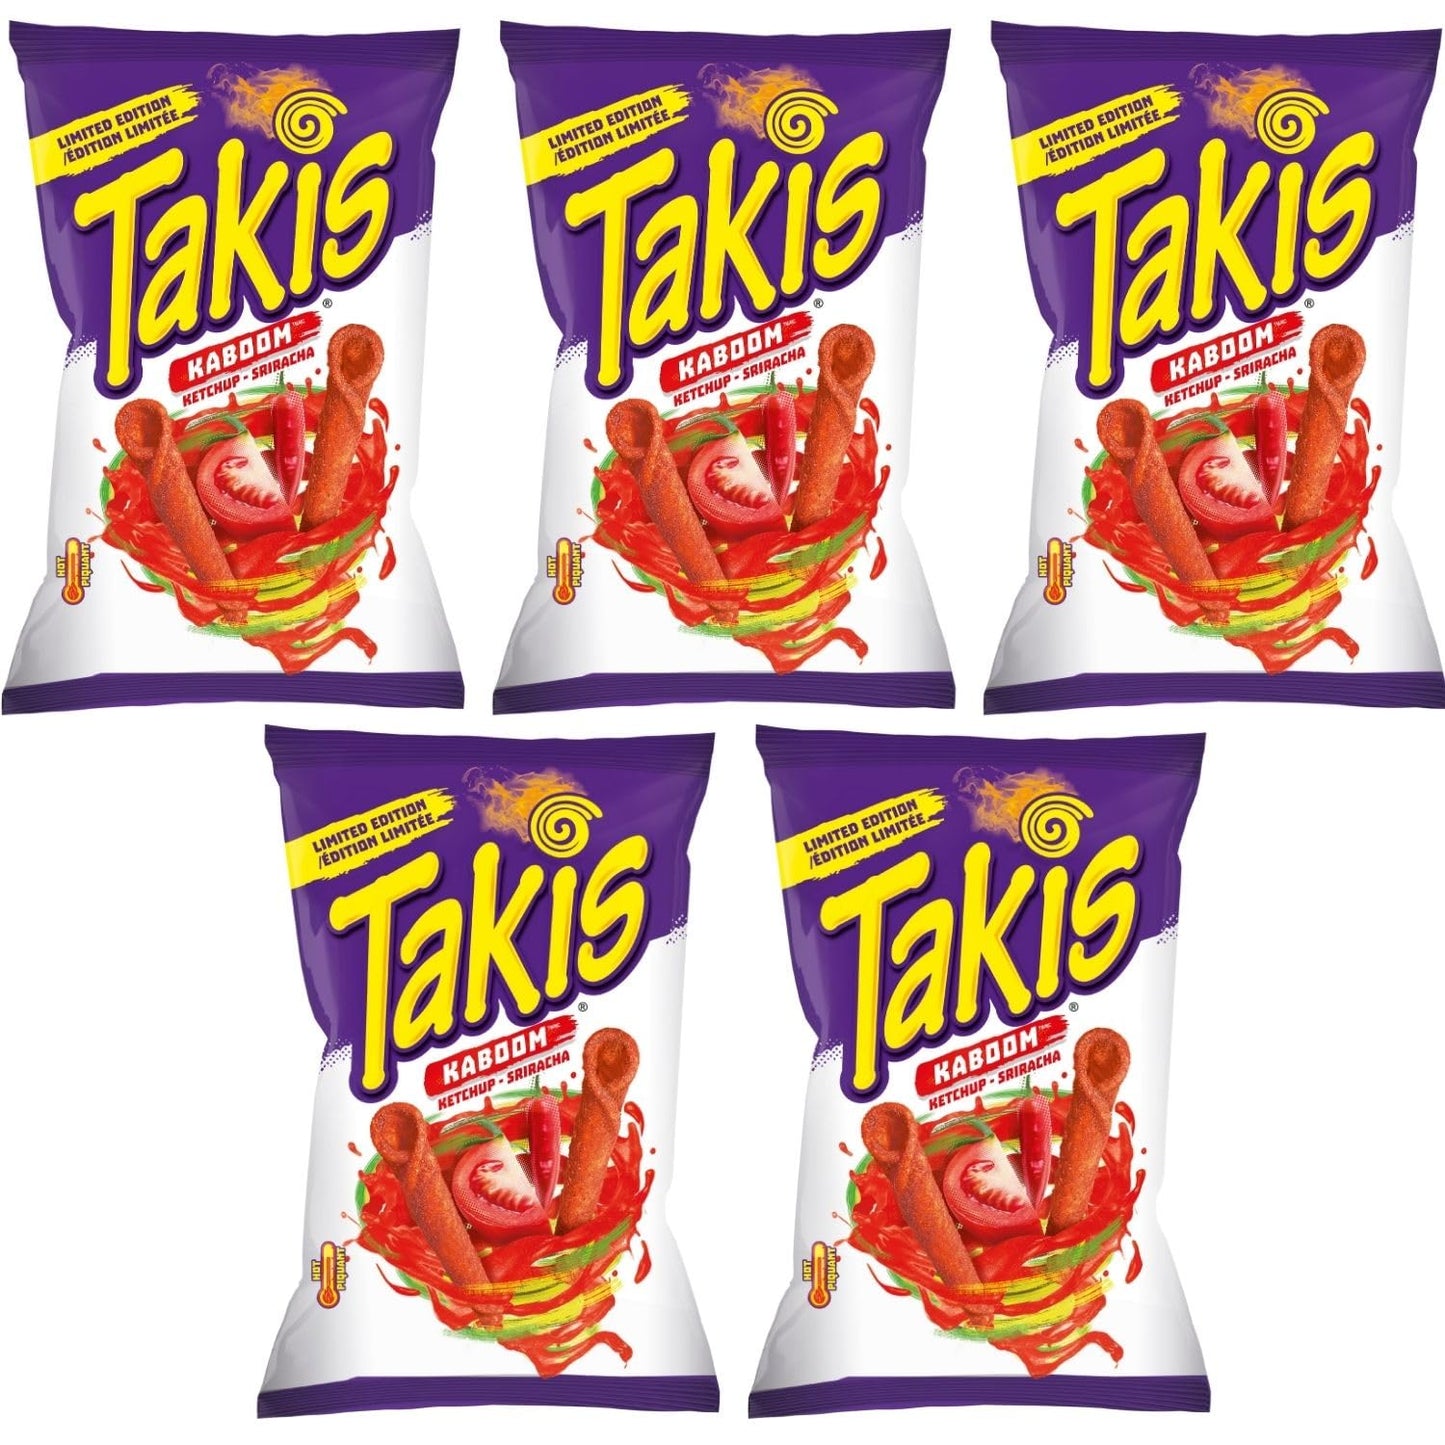 Takis Kaboom Ketchup-Sriracha pack of 5